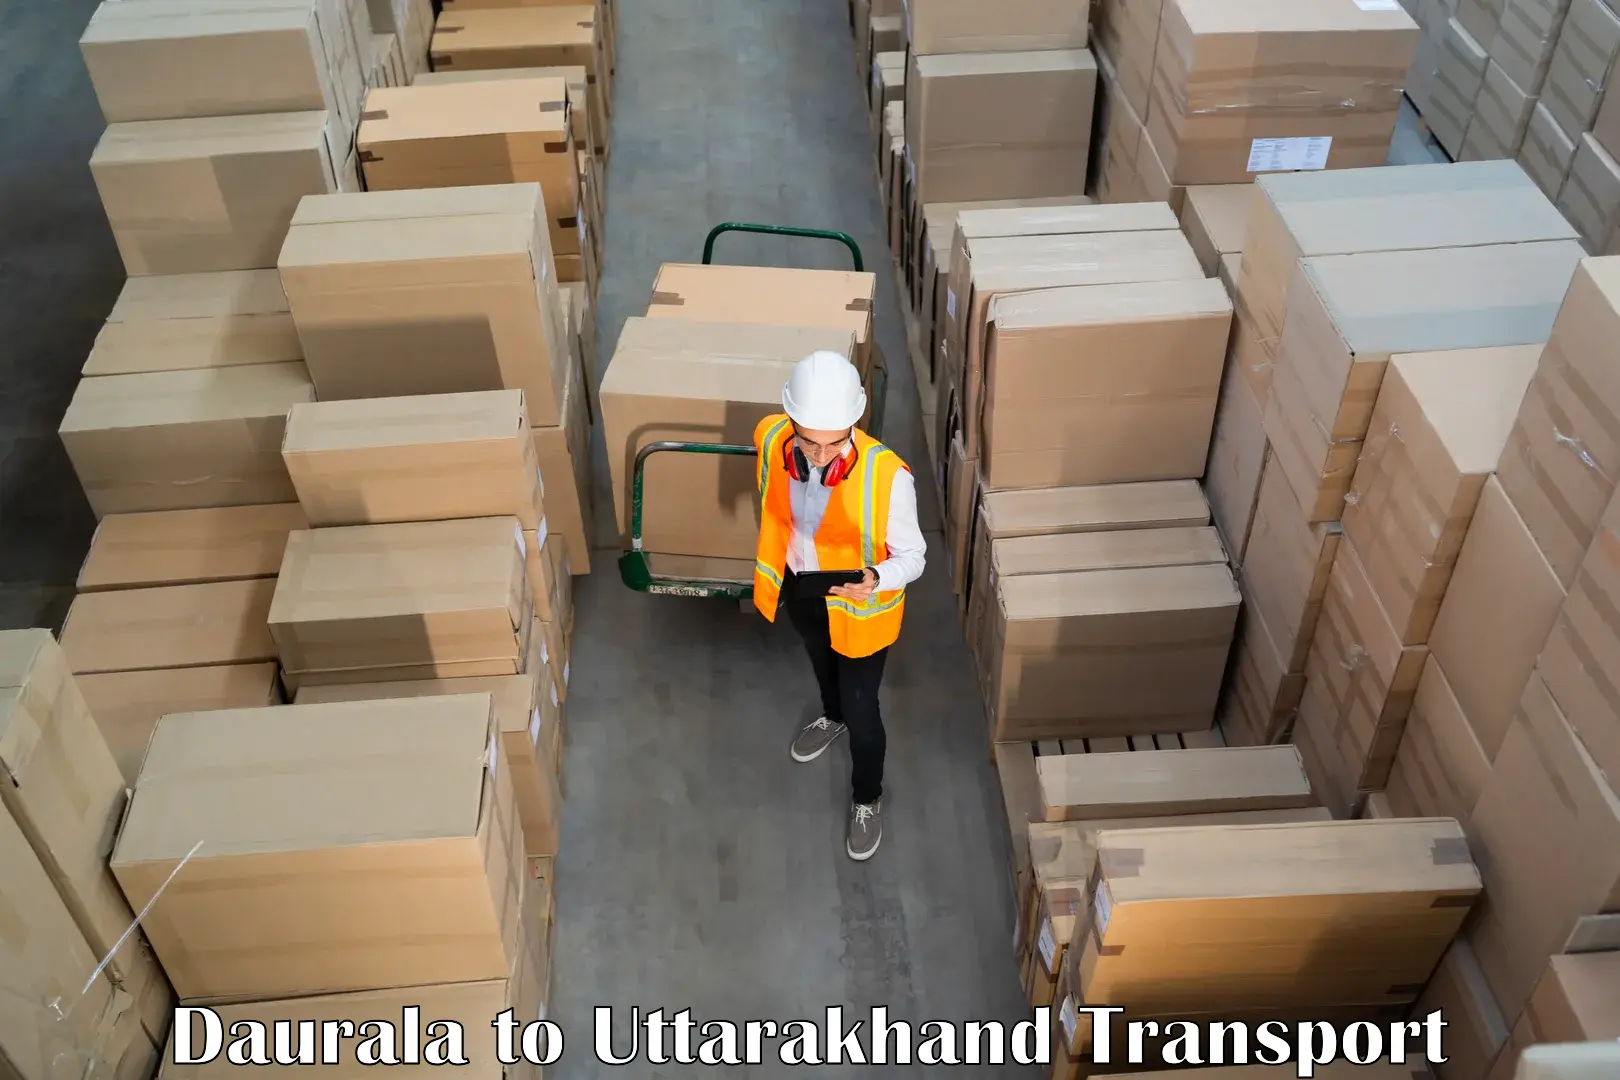 Cargo transport services Daurala to IIT Roorkee